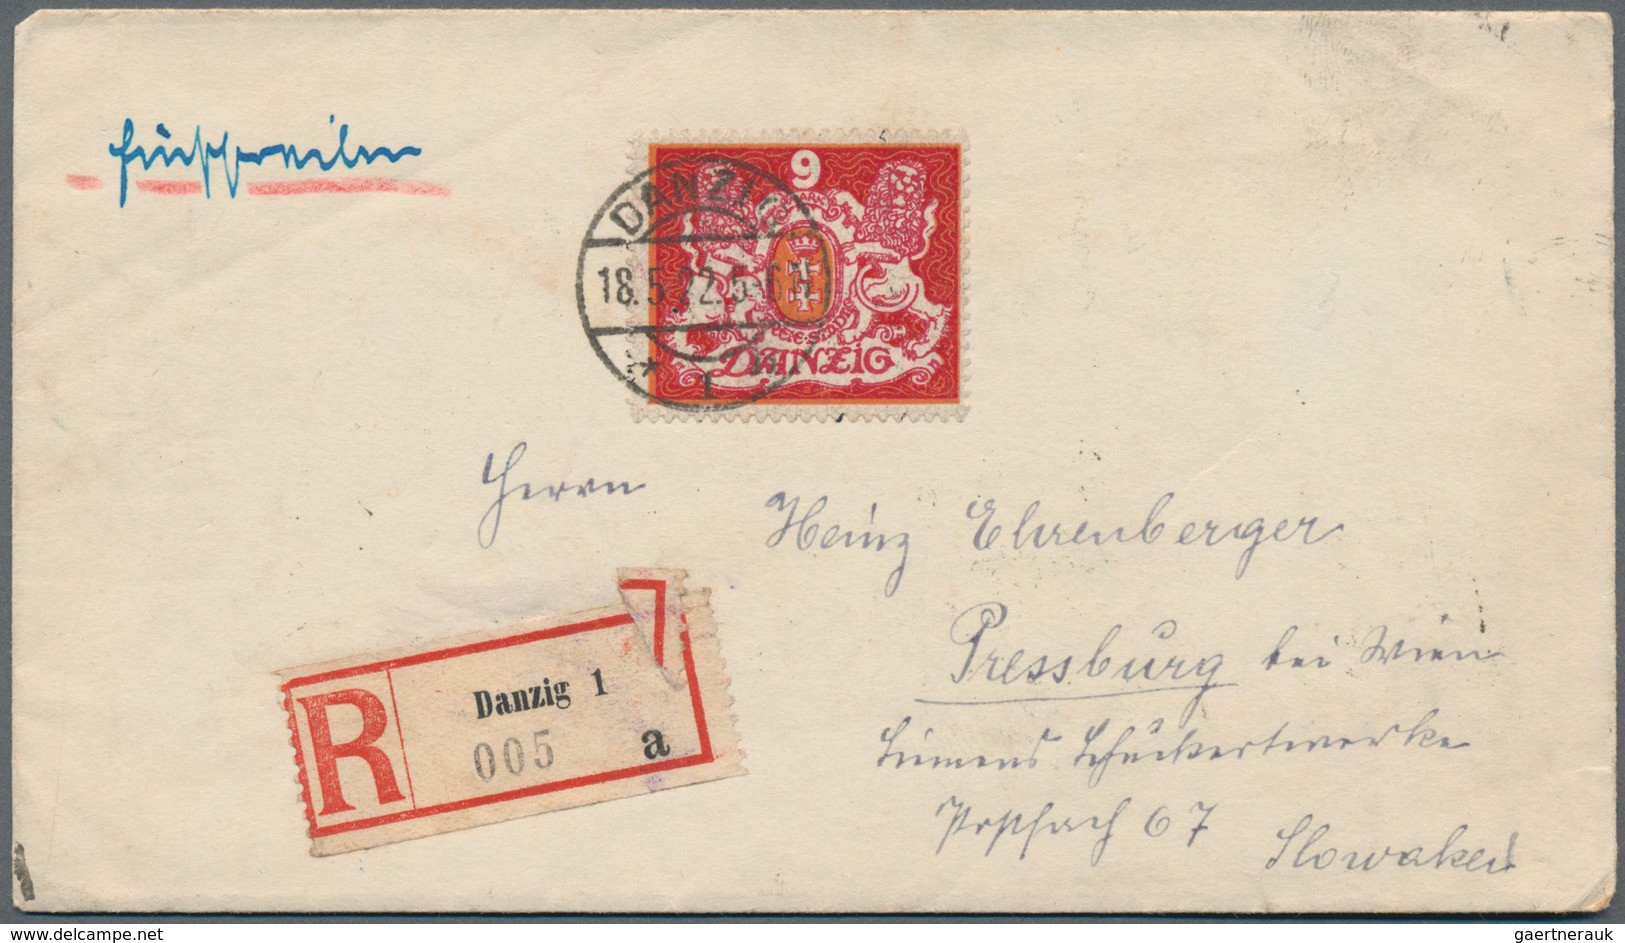 Danzig: 1920/1939, vielseitige Partie von ca. 108 Briefen und Karten mit Bedarfspost und attraktiven